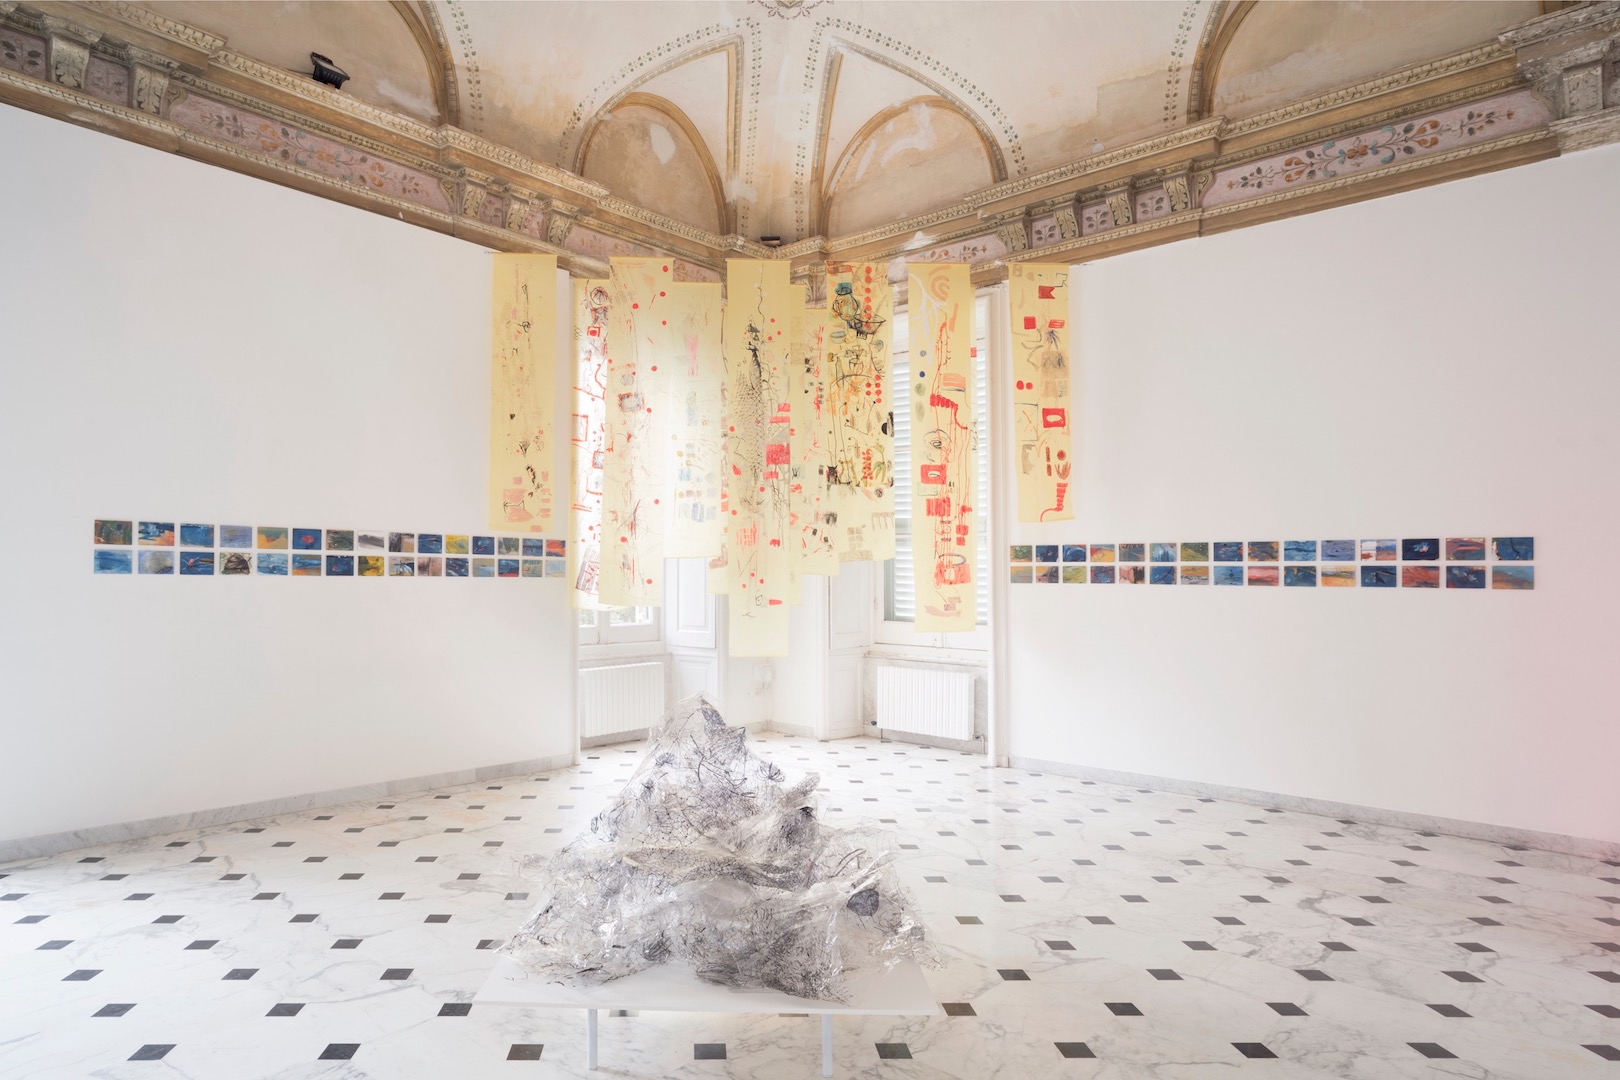 Elisa Montessori, veduta installazione, Vita morte miracoli. Courtesy dell'artista e Galleria Monitor